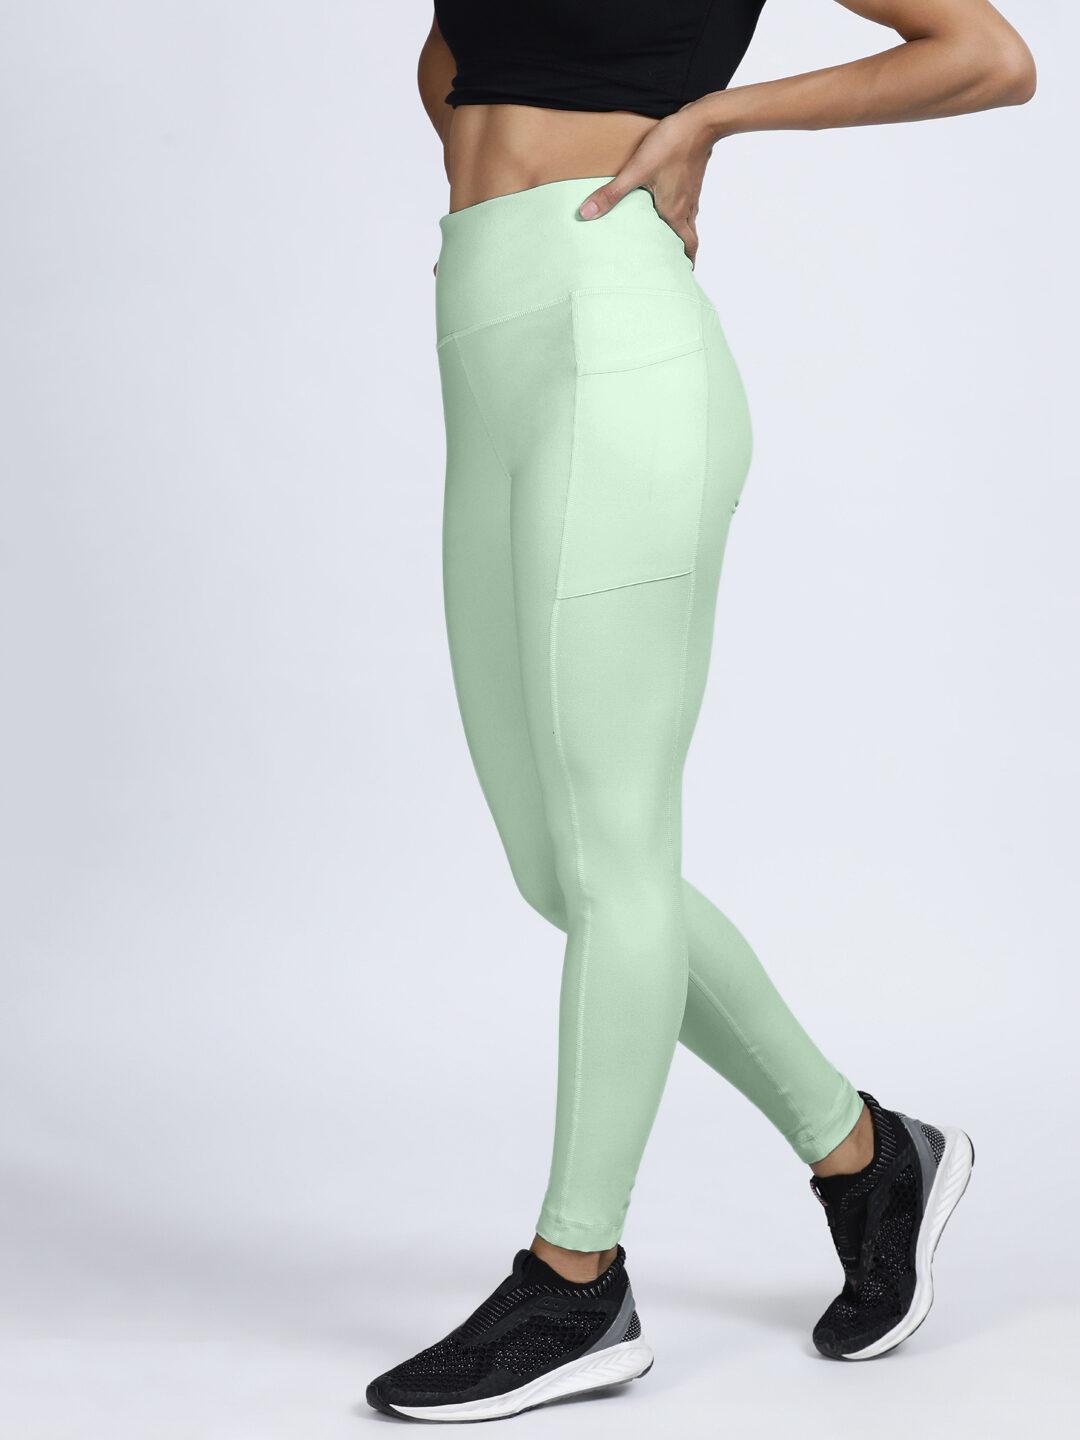 Stash Me In Back Zipper leggings for Women - Mint Green